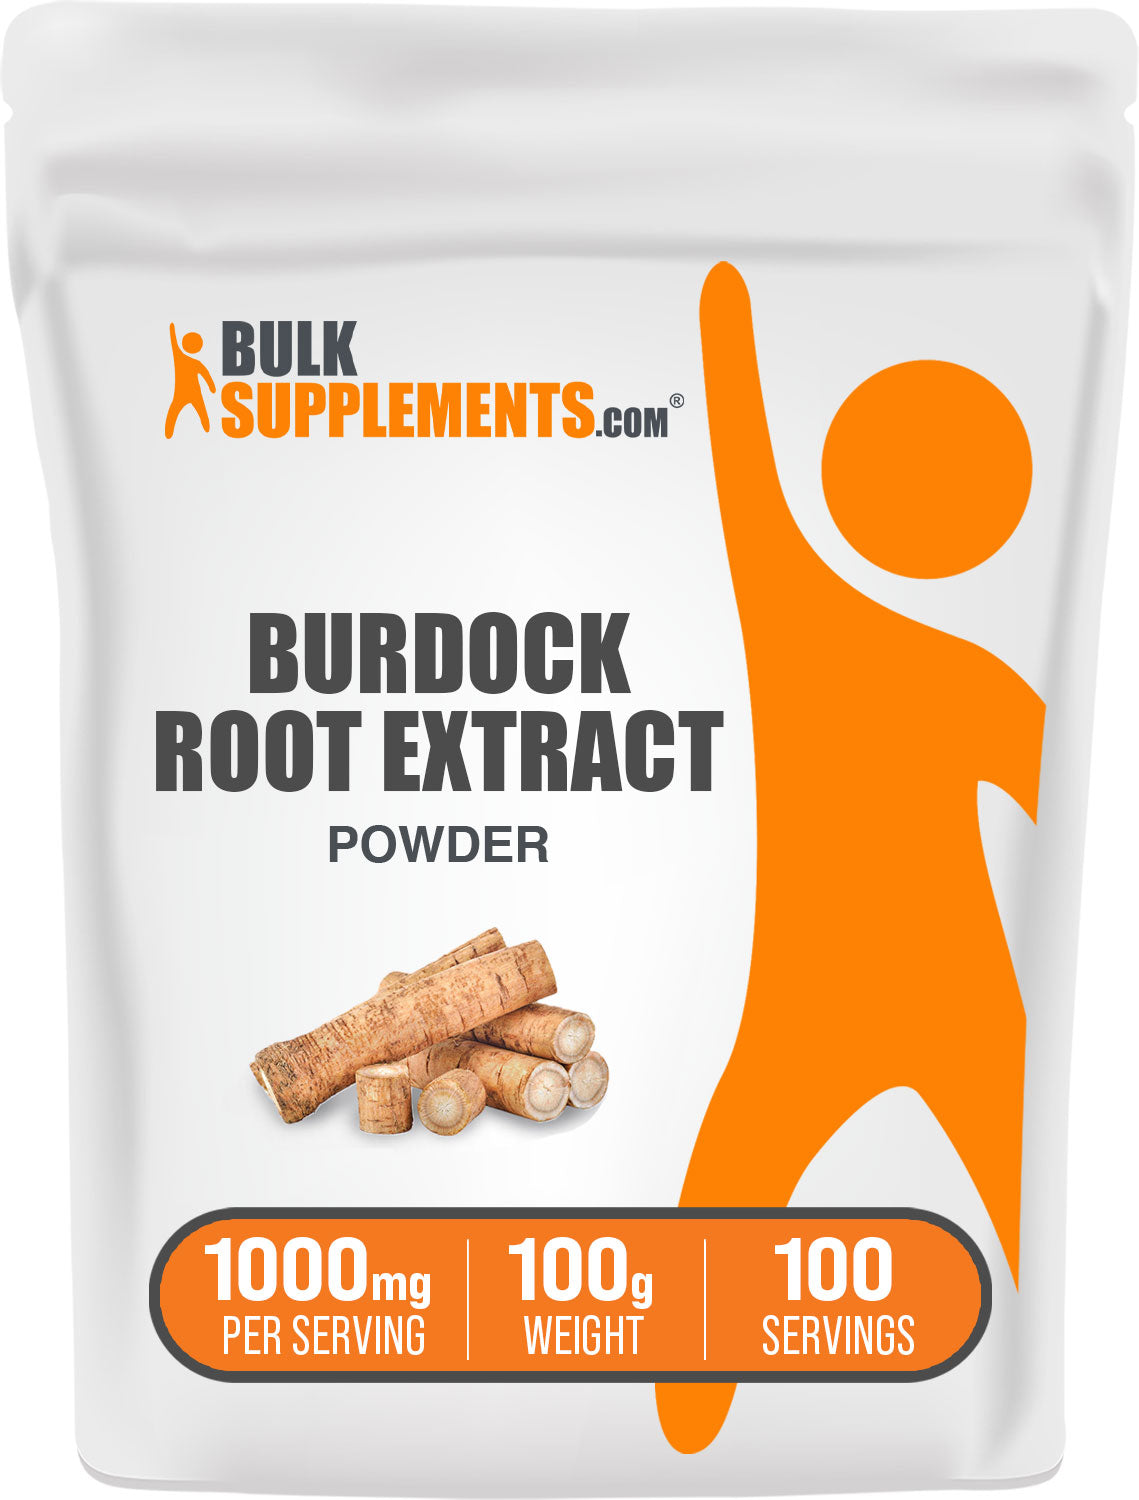 100g of burdock root